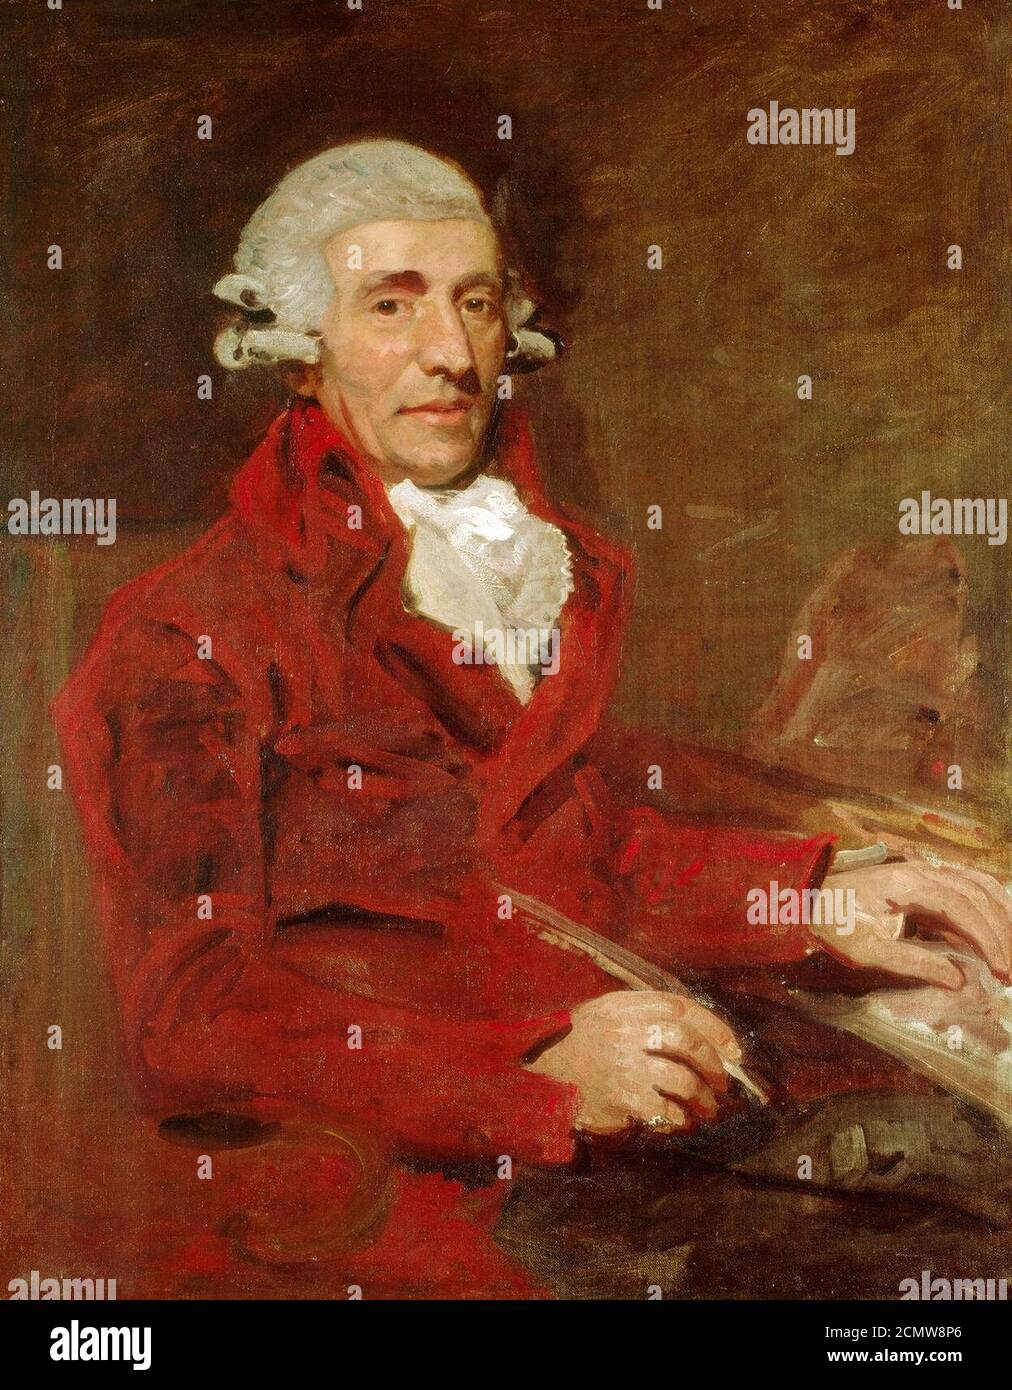 John Hoppner (1758-1810) - Franz Joseph Haydn (1732-1809) Stock Photo